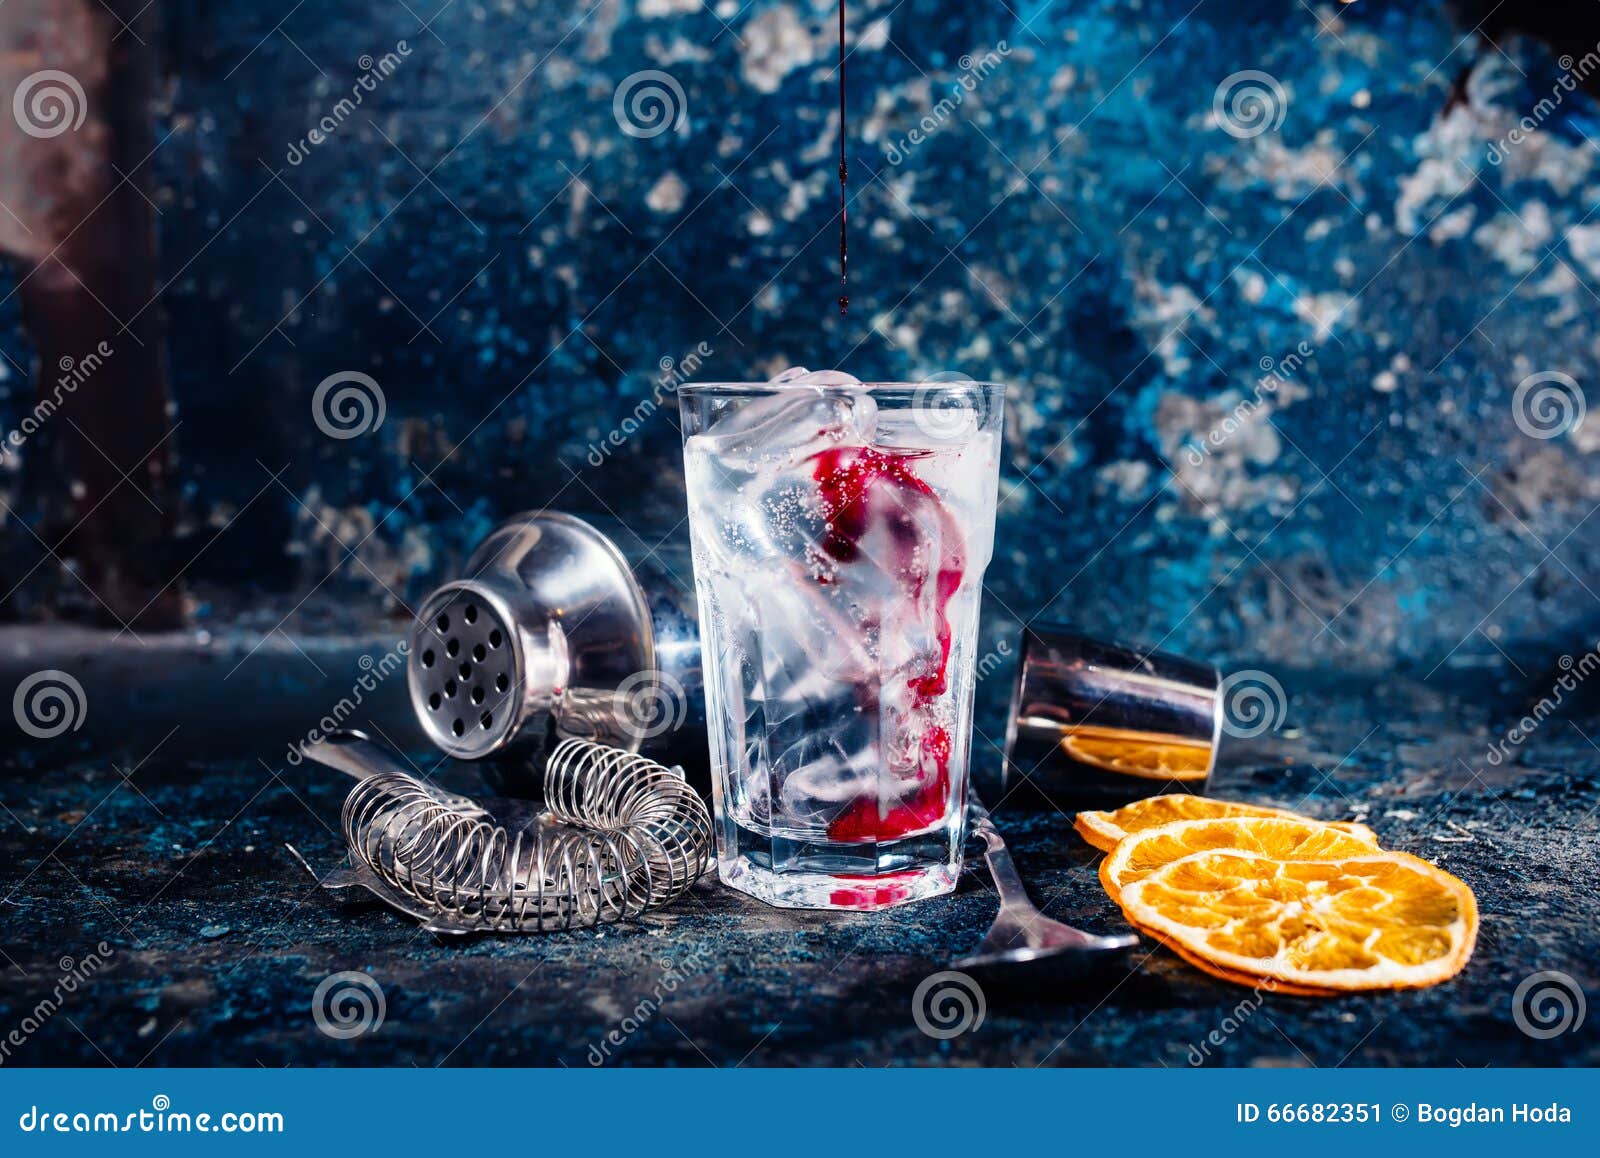 bartender pouring cranberry juice over vodka cocktail